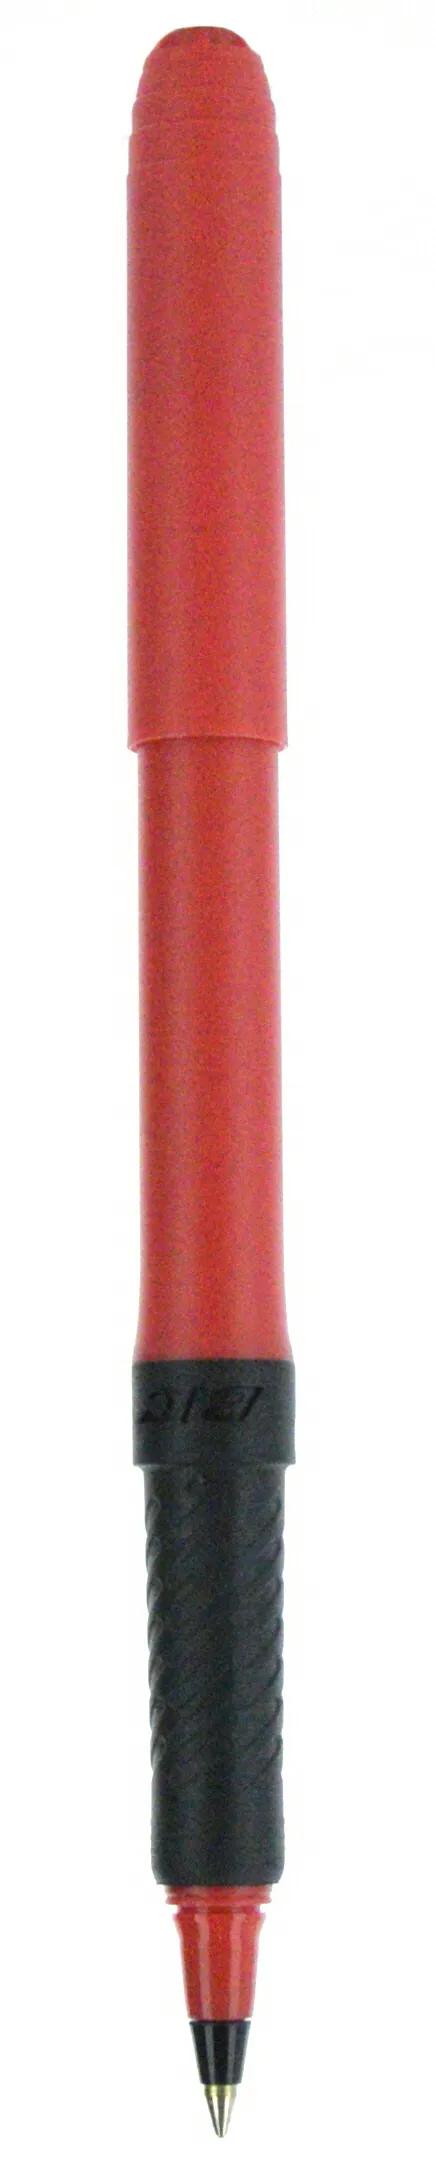 BIC® Grip Roller Pen 110 of 147